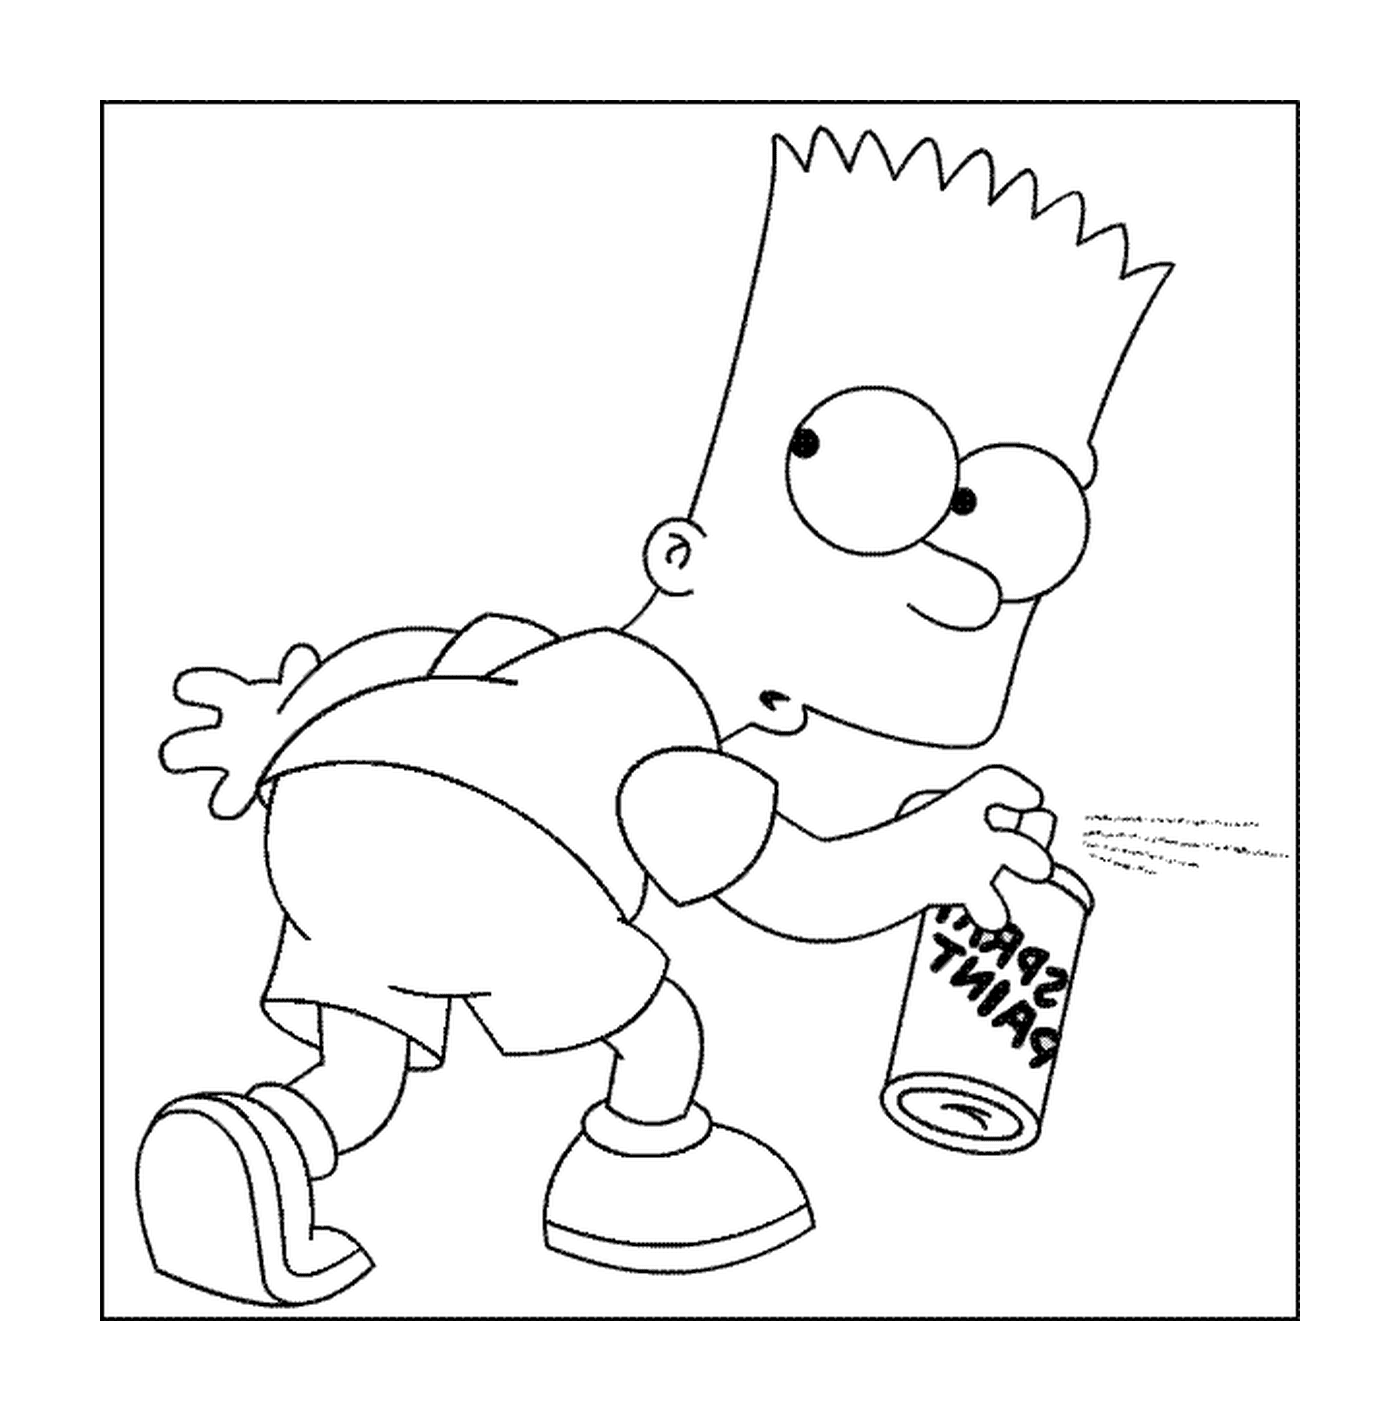  Bart fa un'etichetta 